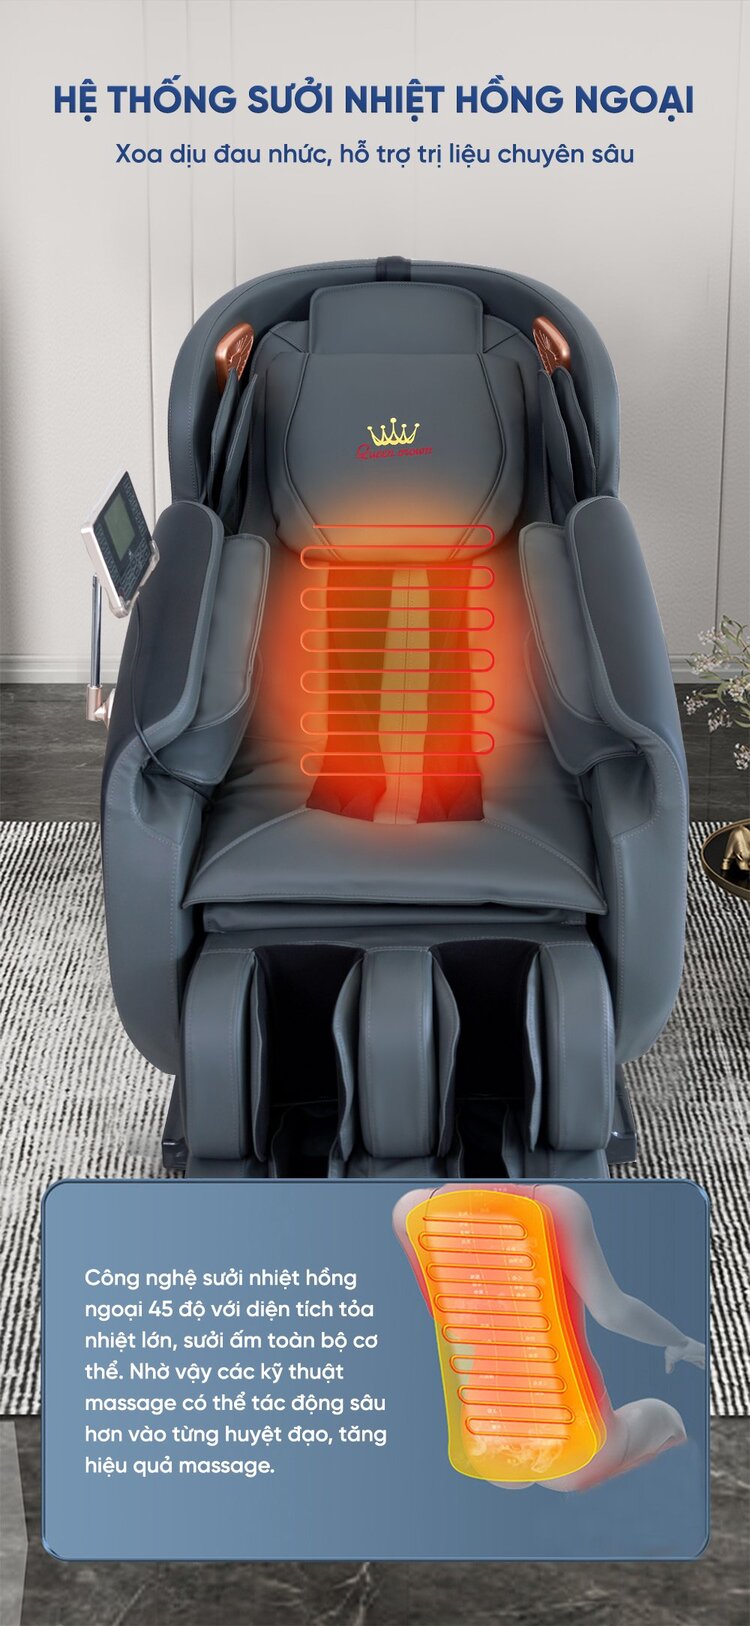 Ghế massage Queen Crown QA77 tích hợp nhiệt hồng ngoại